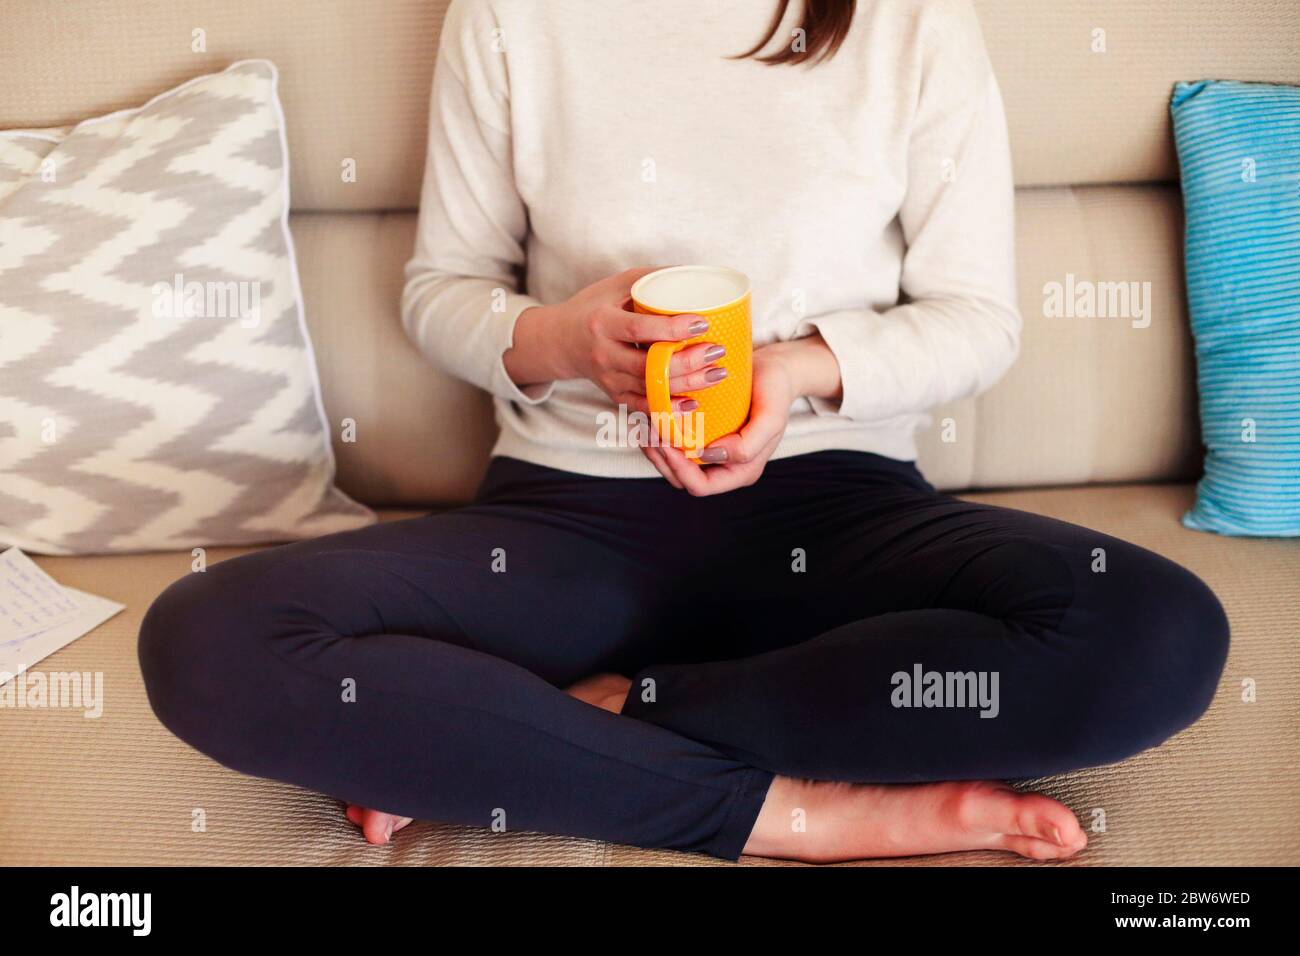 Schneiden Sie anonyme Frau in lässiger Kleidung sitzen auf einer bequemen Couch und genießen heißen Cappuccino während der Abkühlung zu Hause am Wochenende Stockfoto